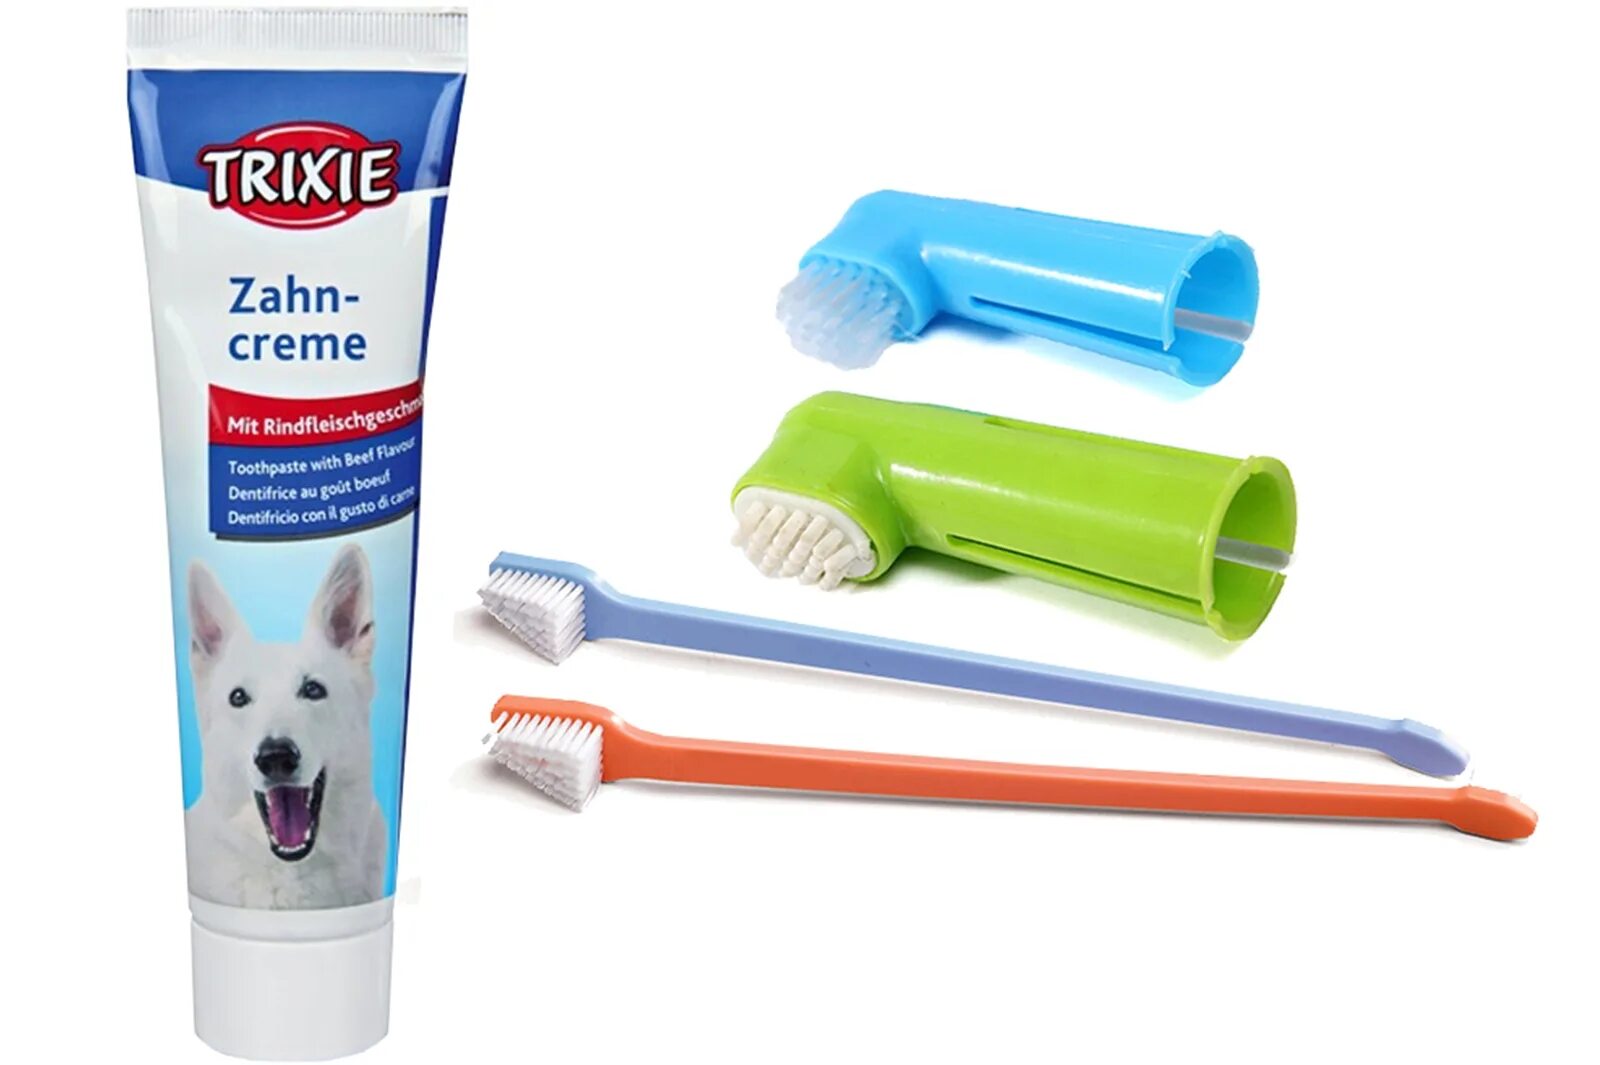 Зубная паста трикси для собак. Harzt Brush n clean Dental зубная паста для собак. Зубная щётка для собак мелких пород. Щетка для чистки зубов собак. Что можно купить собаке